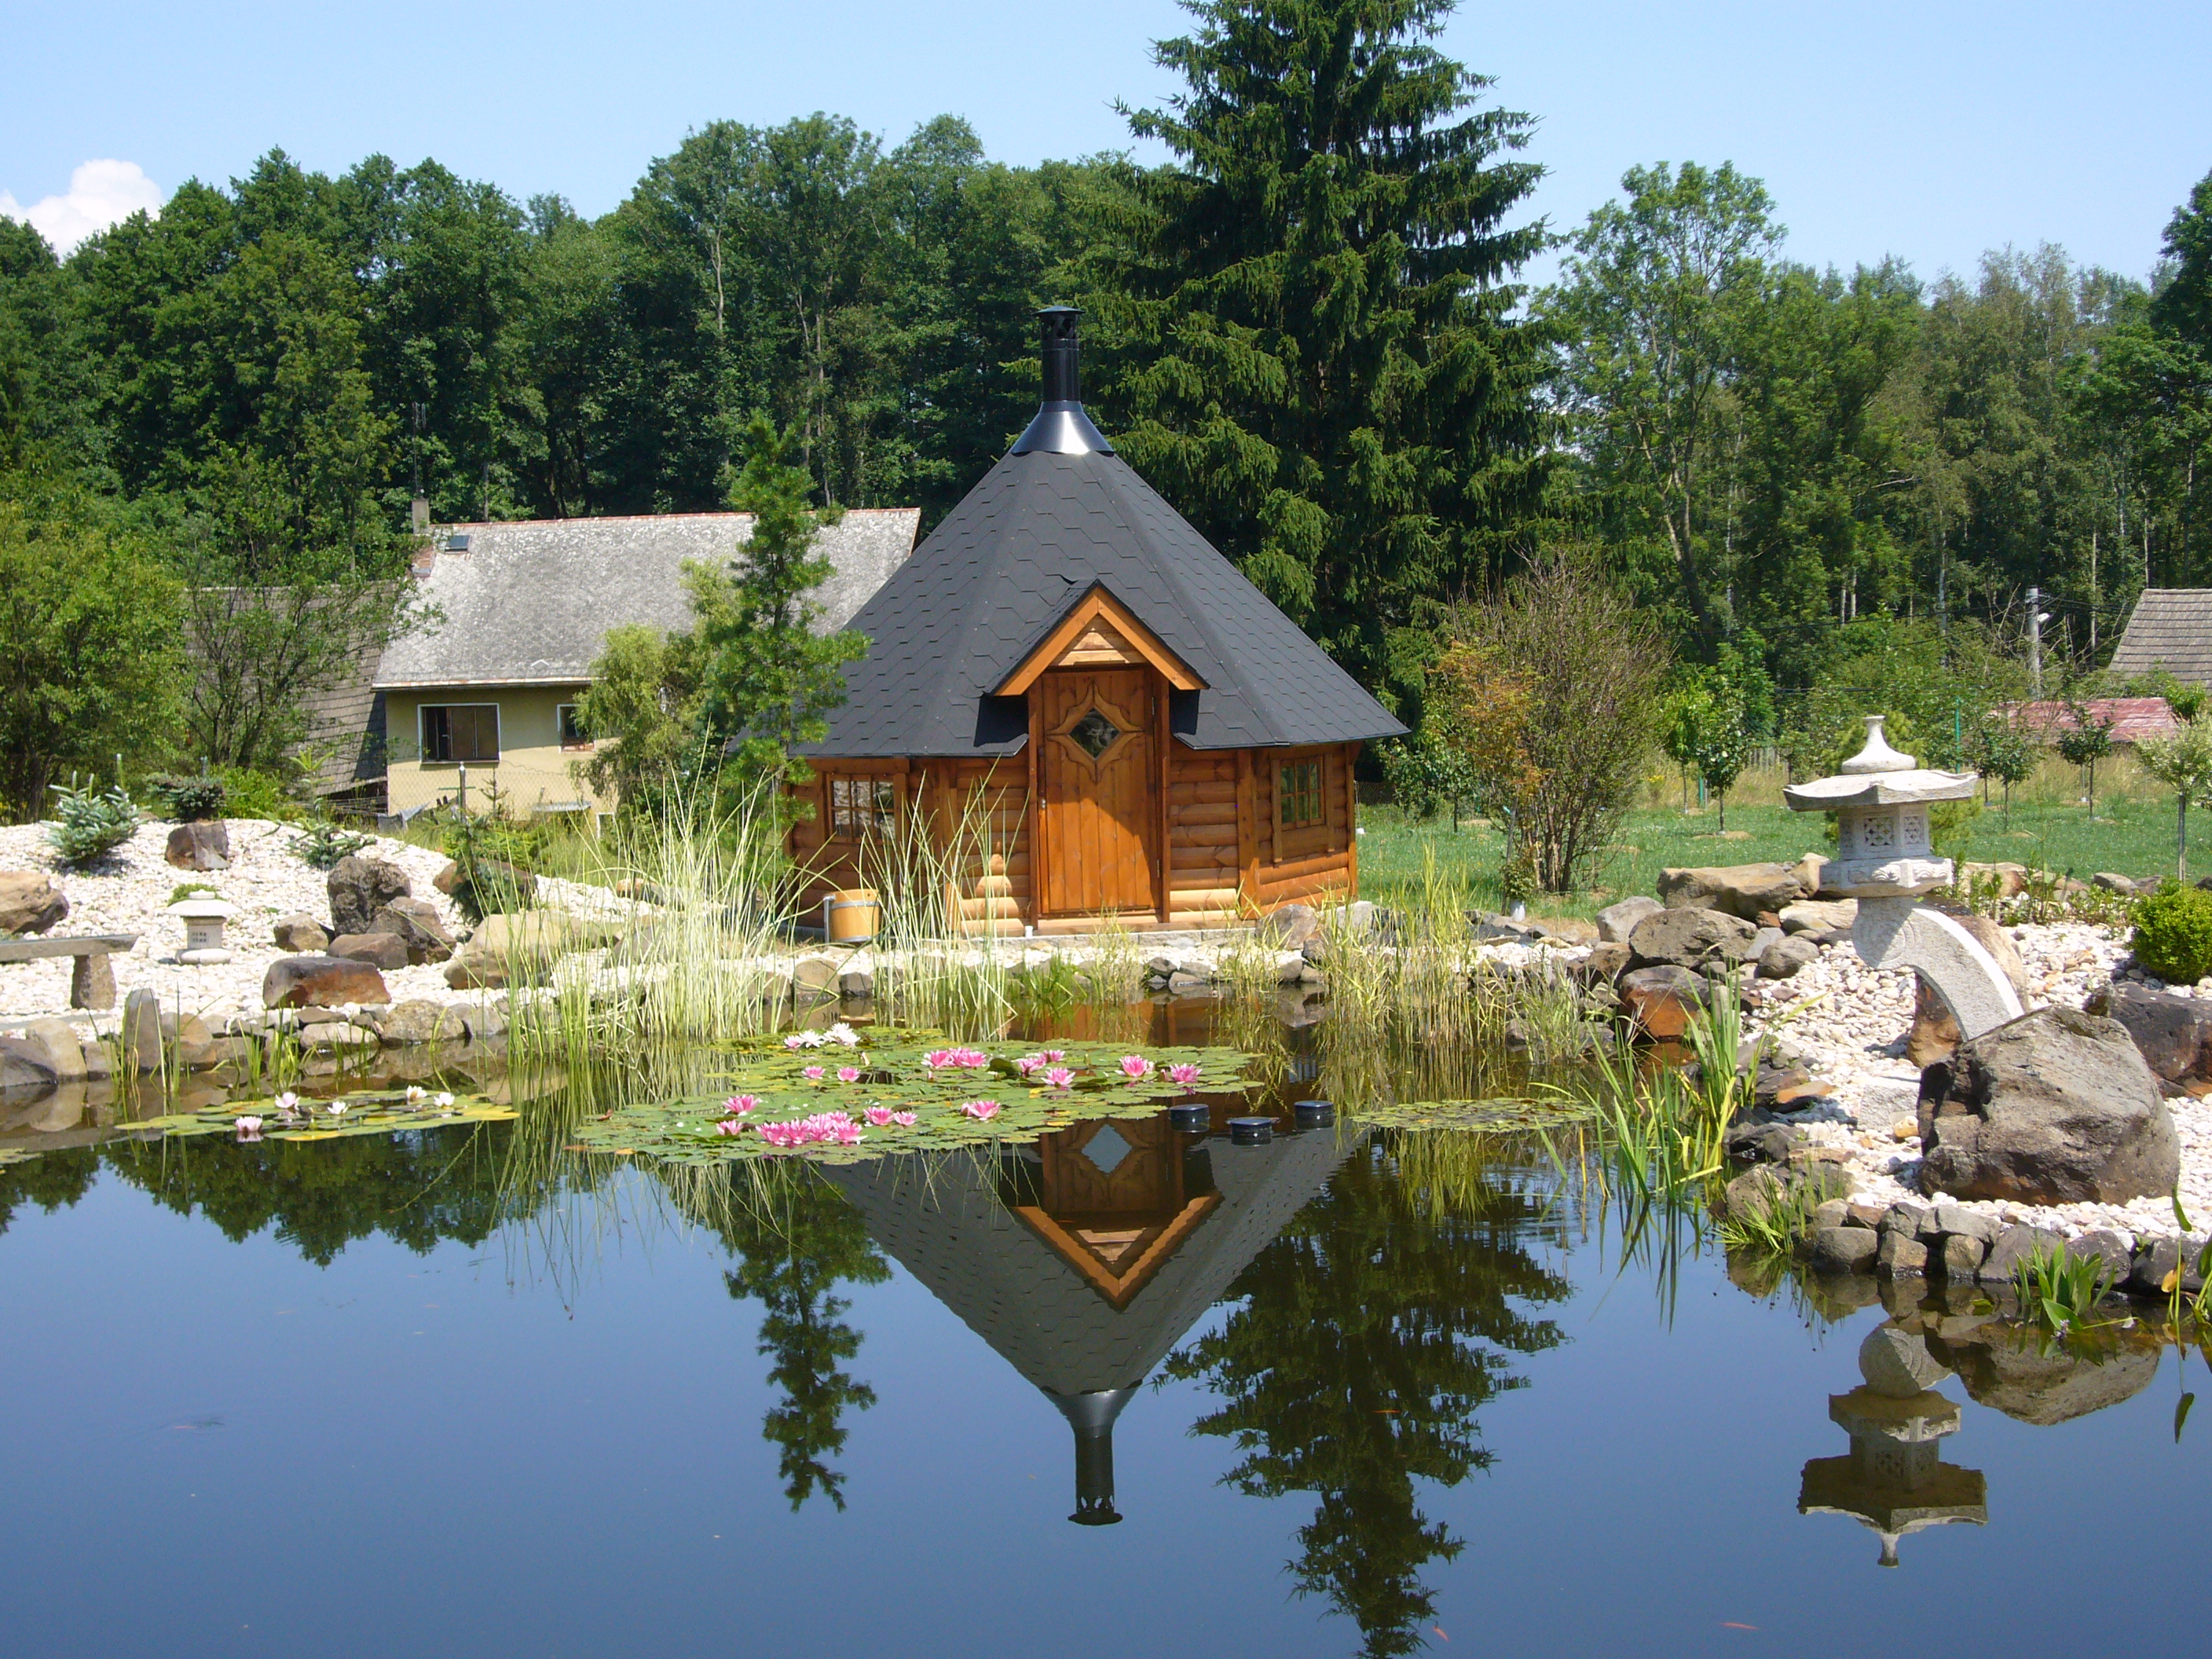 venkovní sauna, sauna na zahradě, zahradní sauna, saunování, ahku, welness, zdravý životní styl